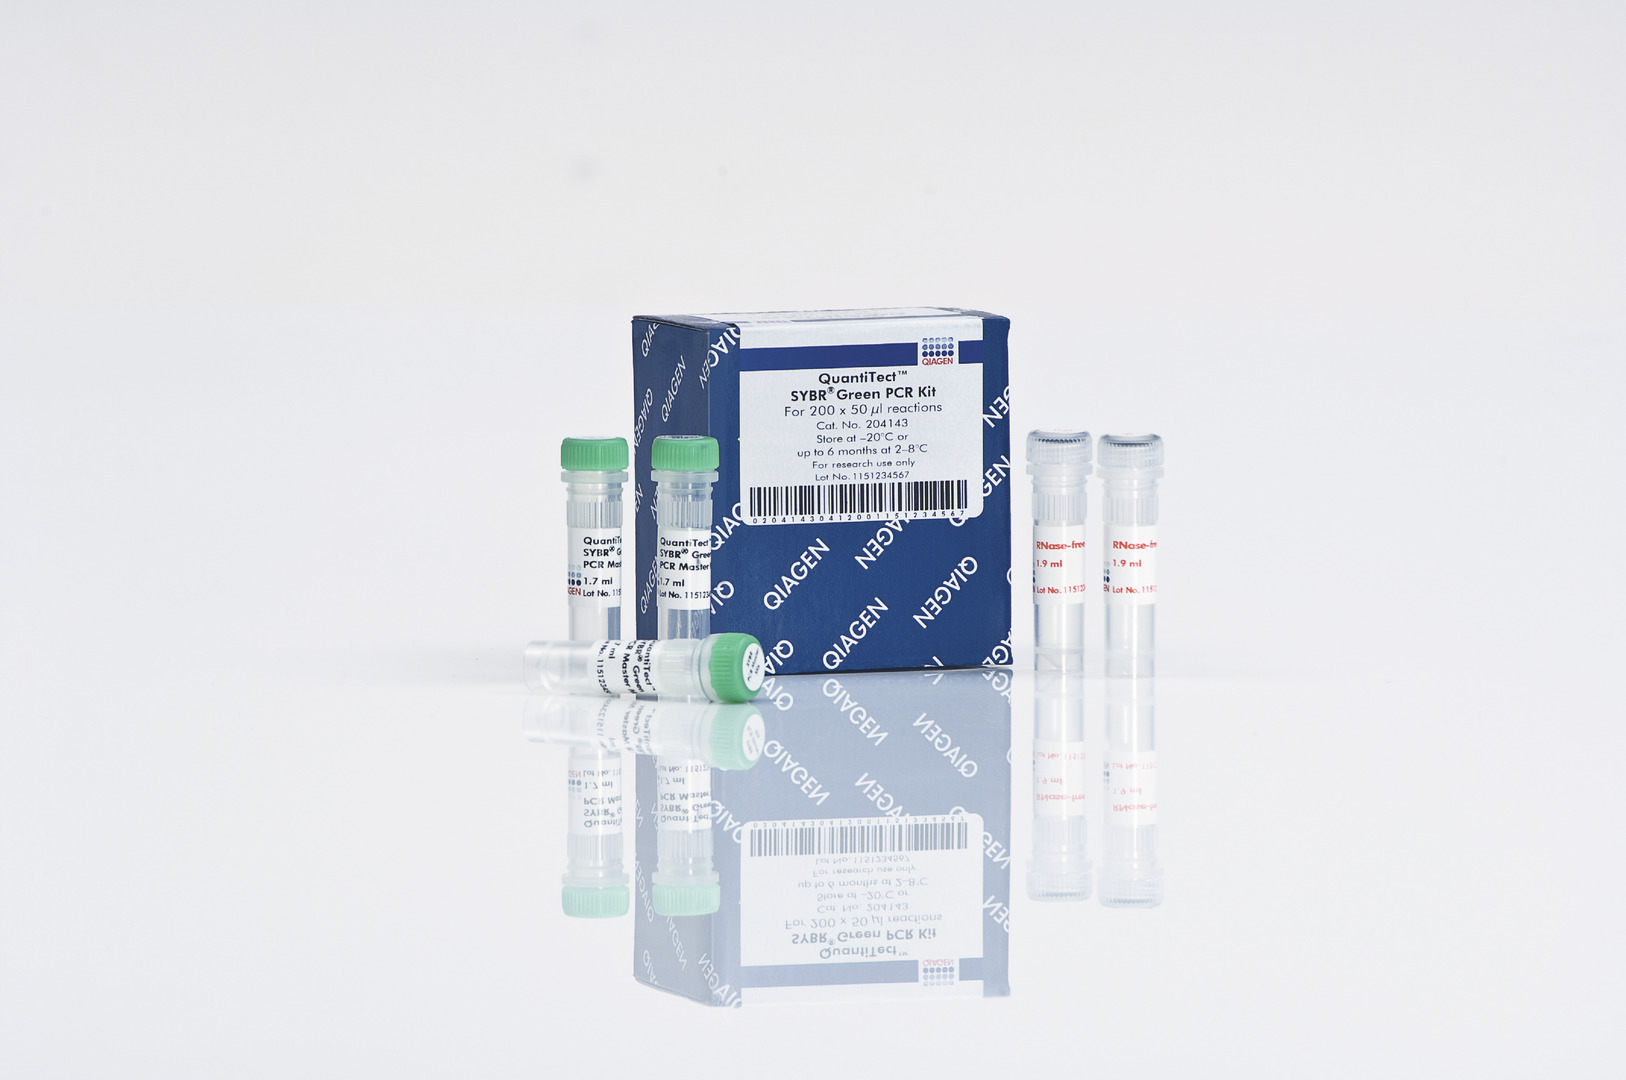 QuantiTect SYBR Green PCR Kit